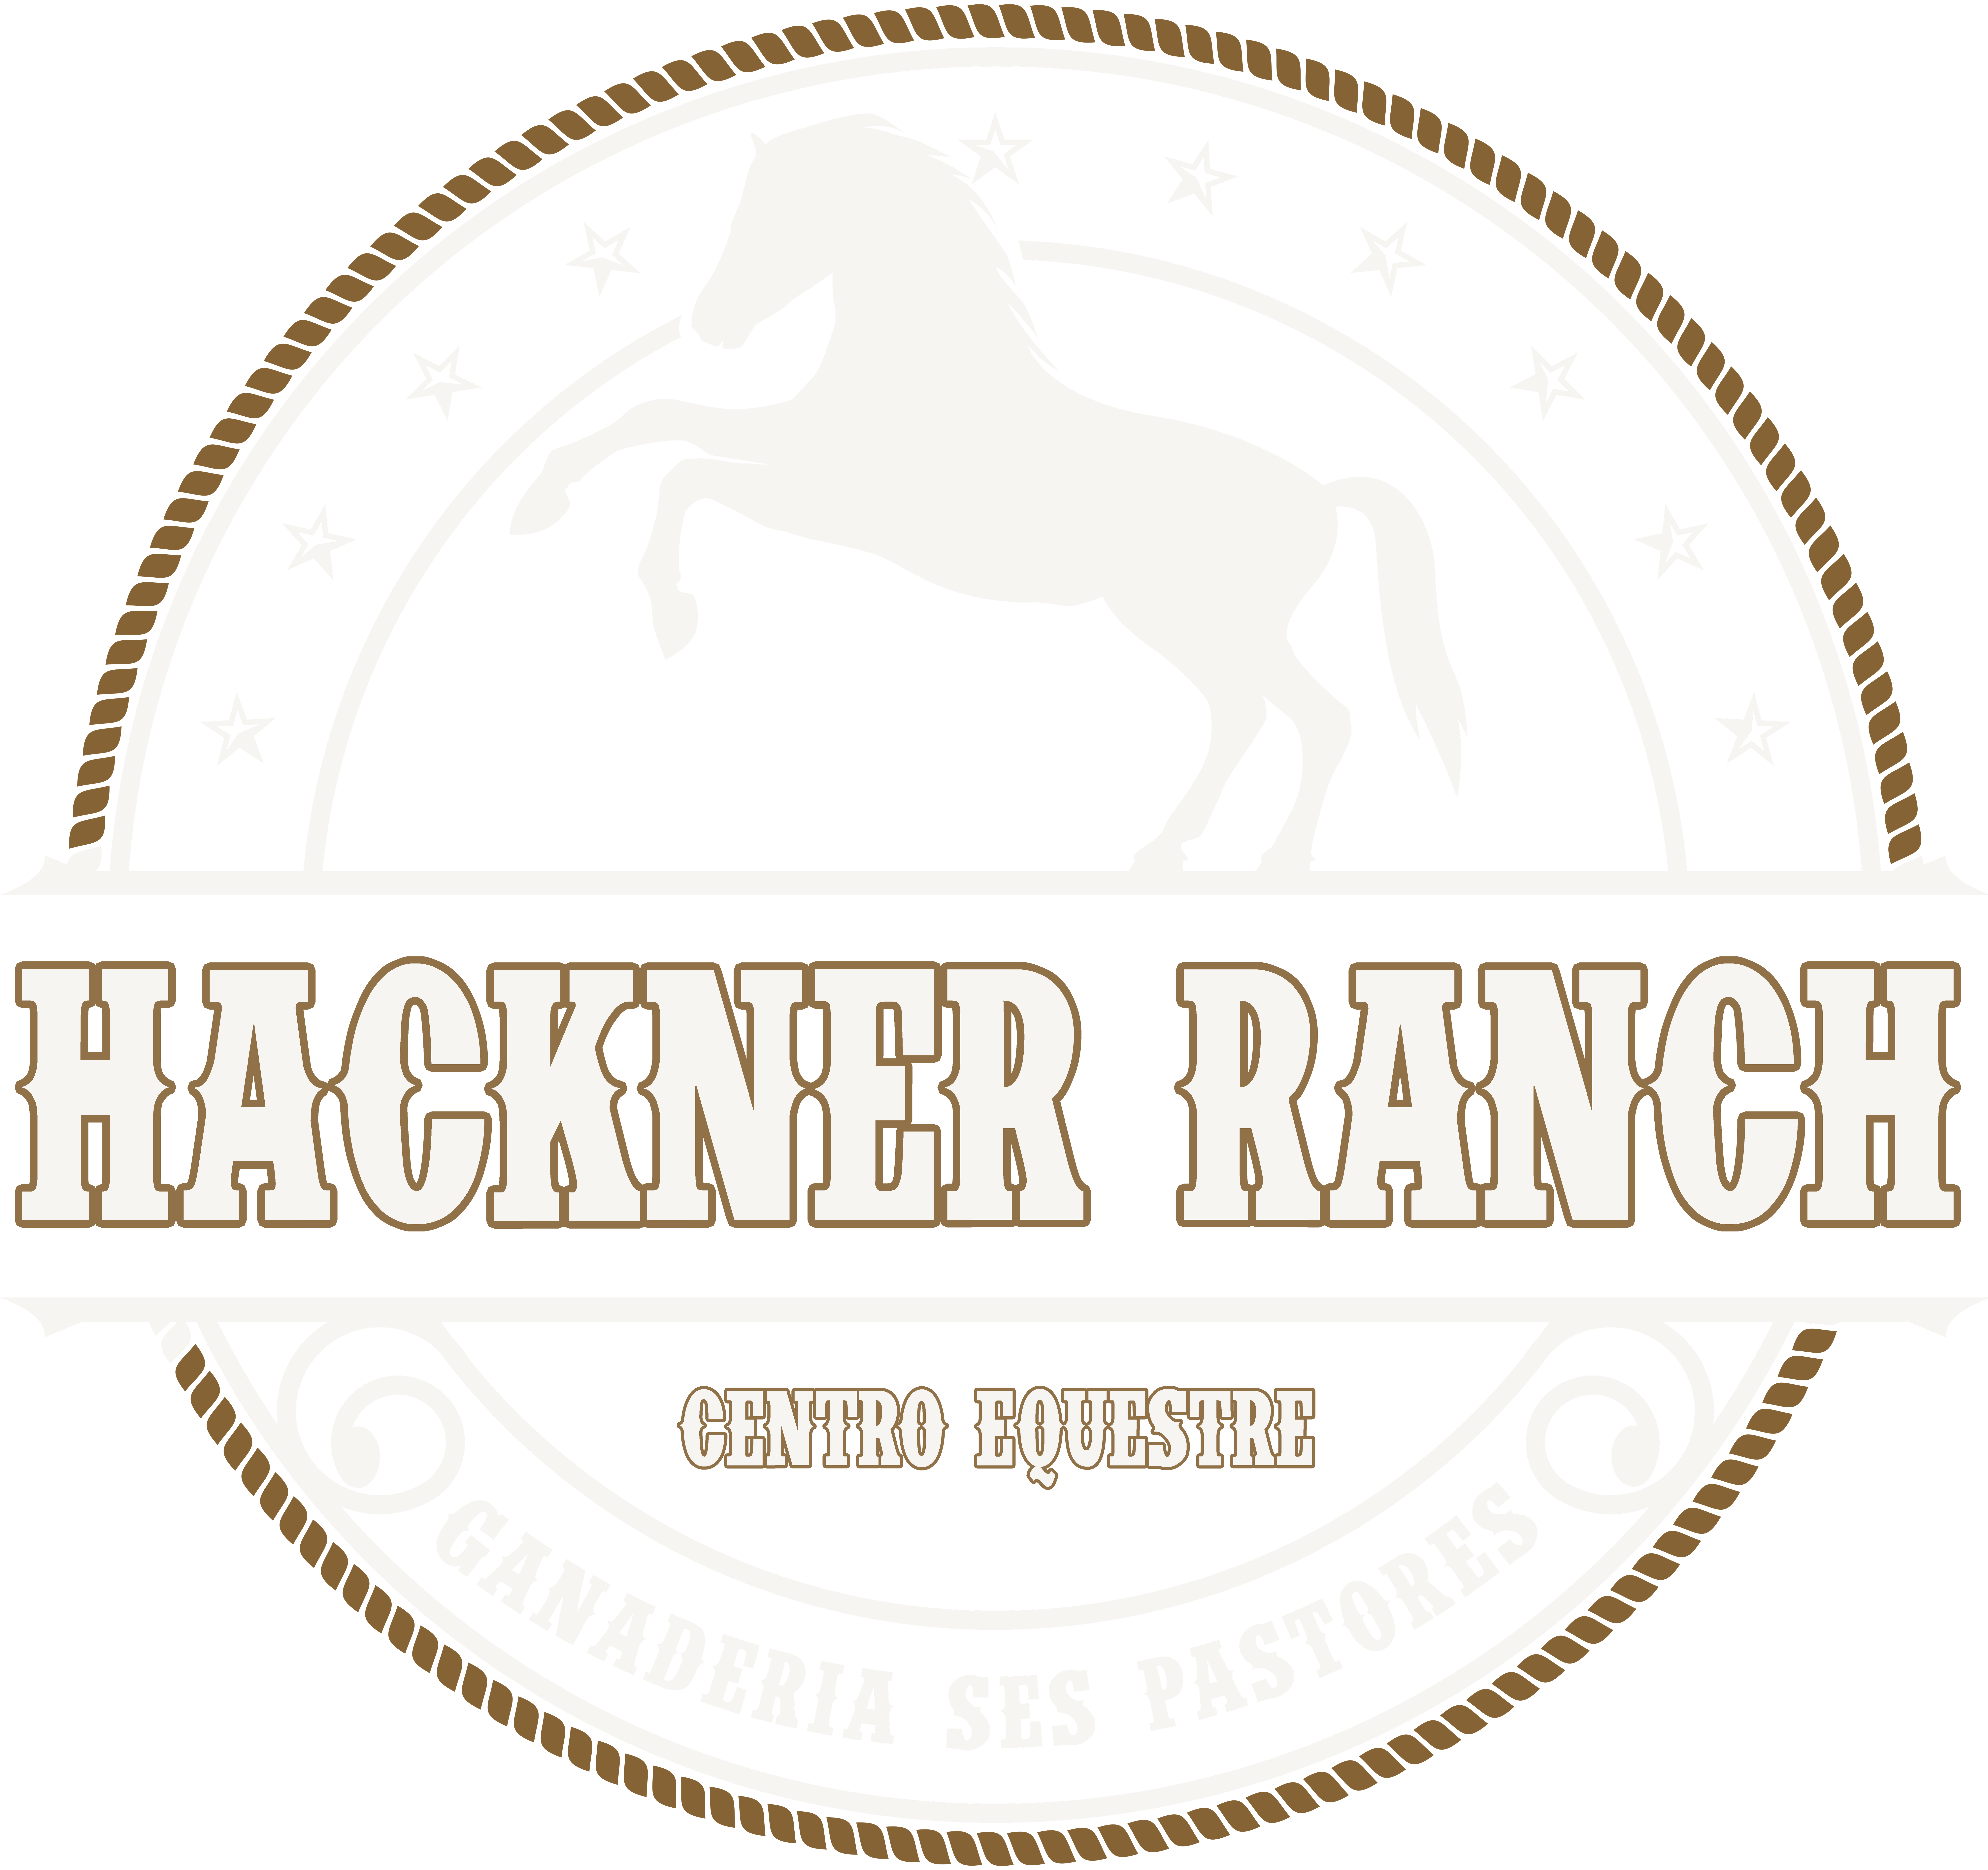 Hackner Ranch